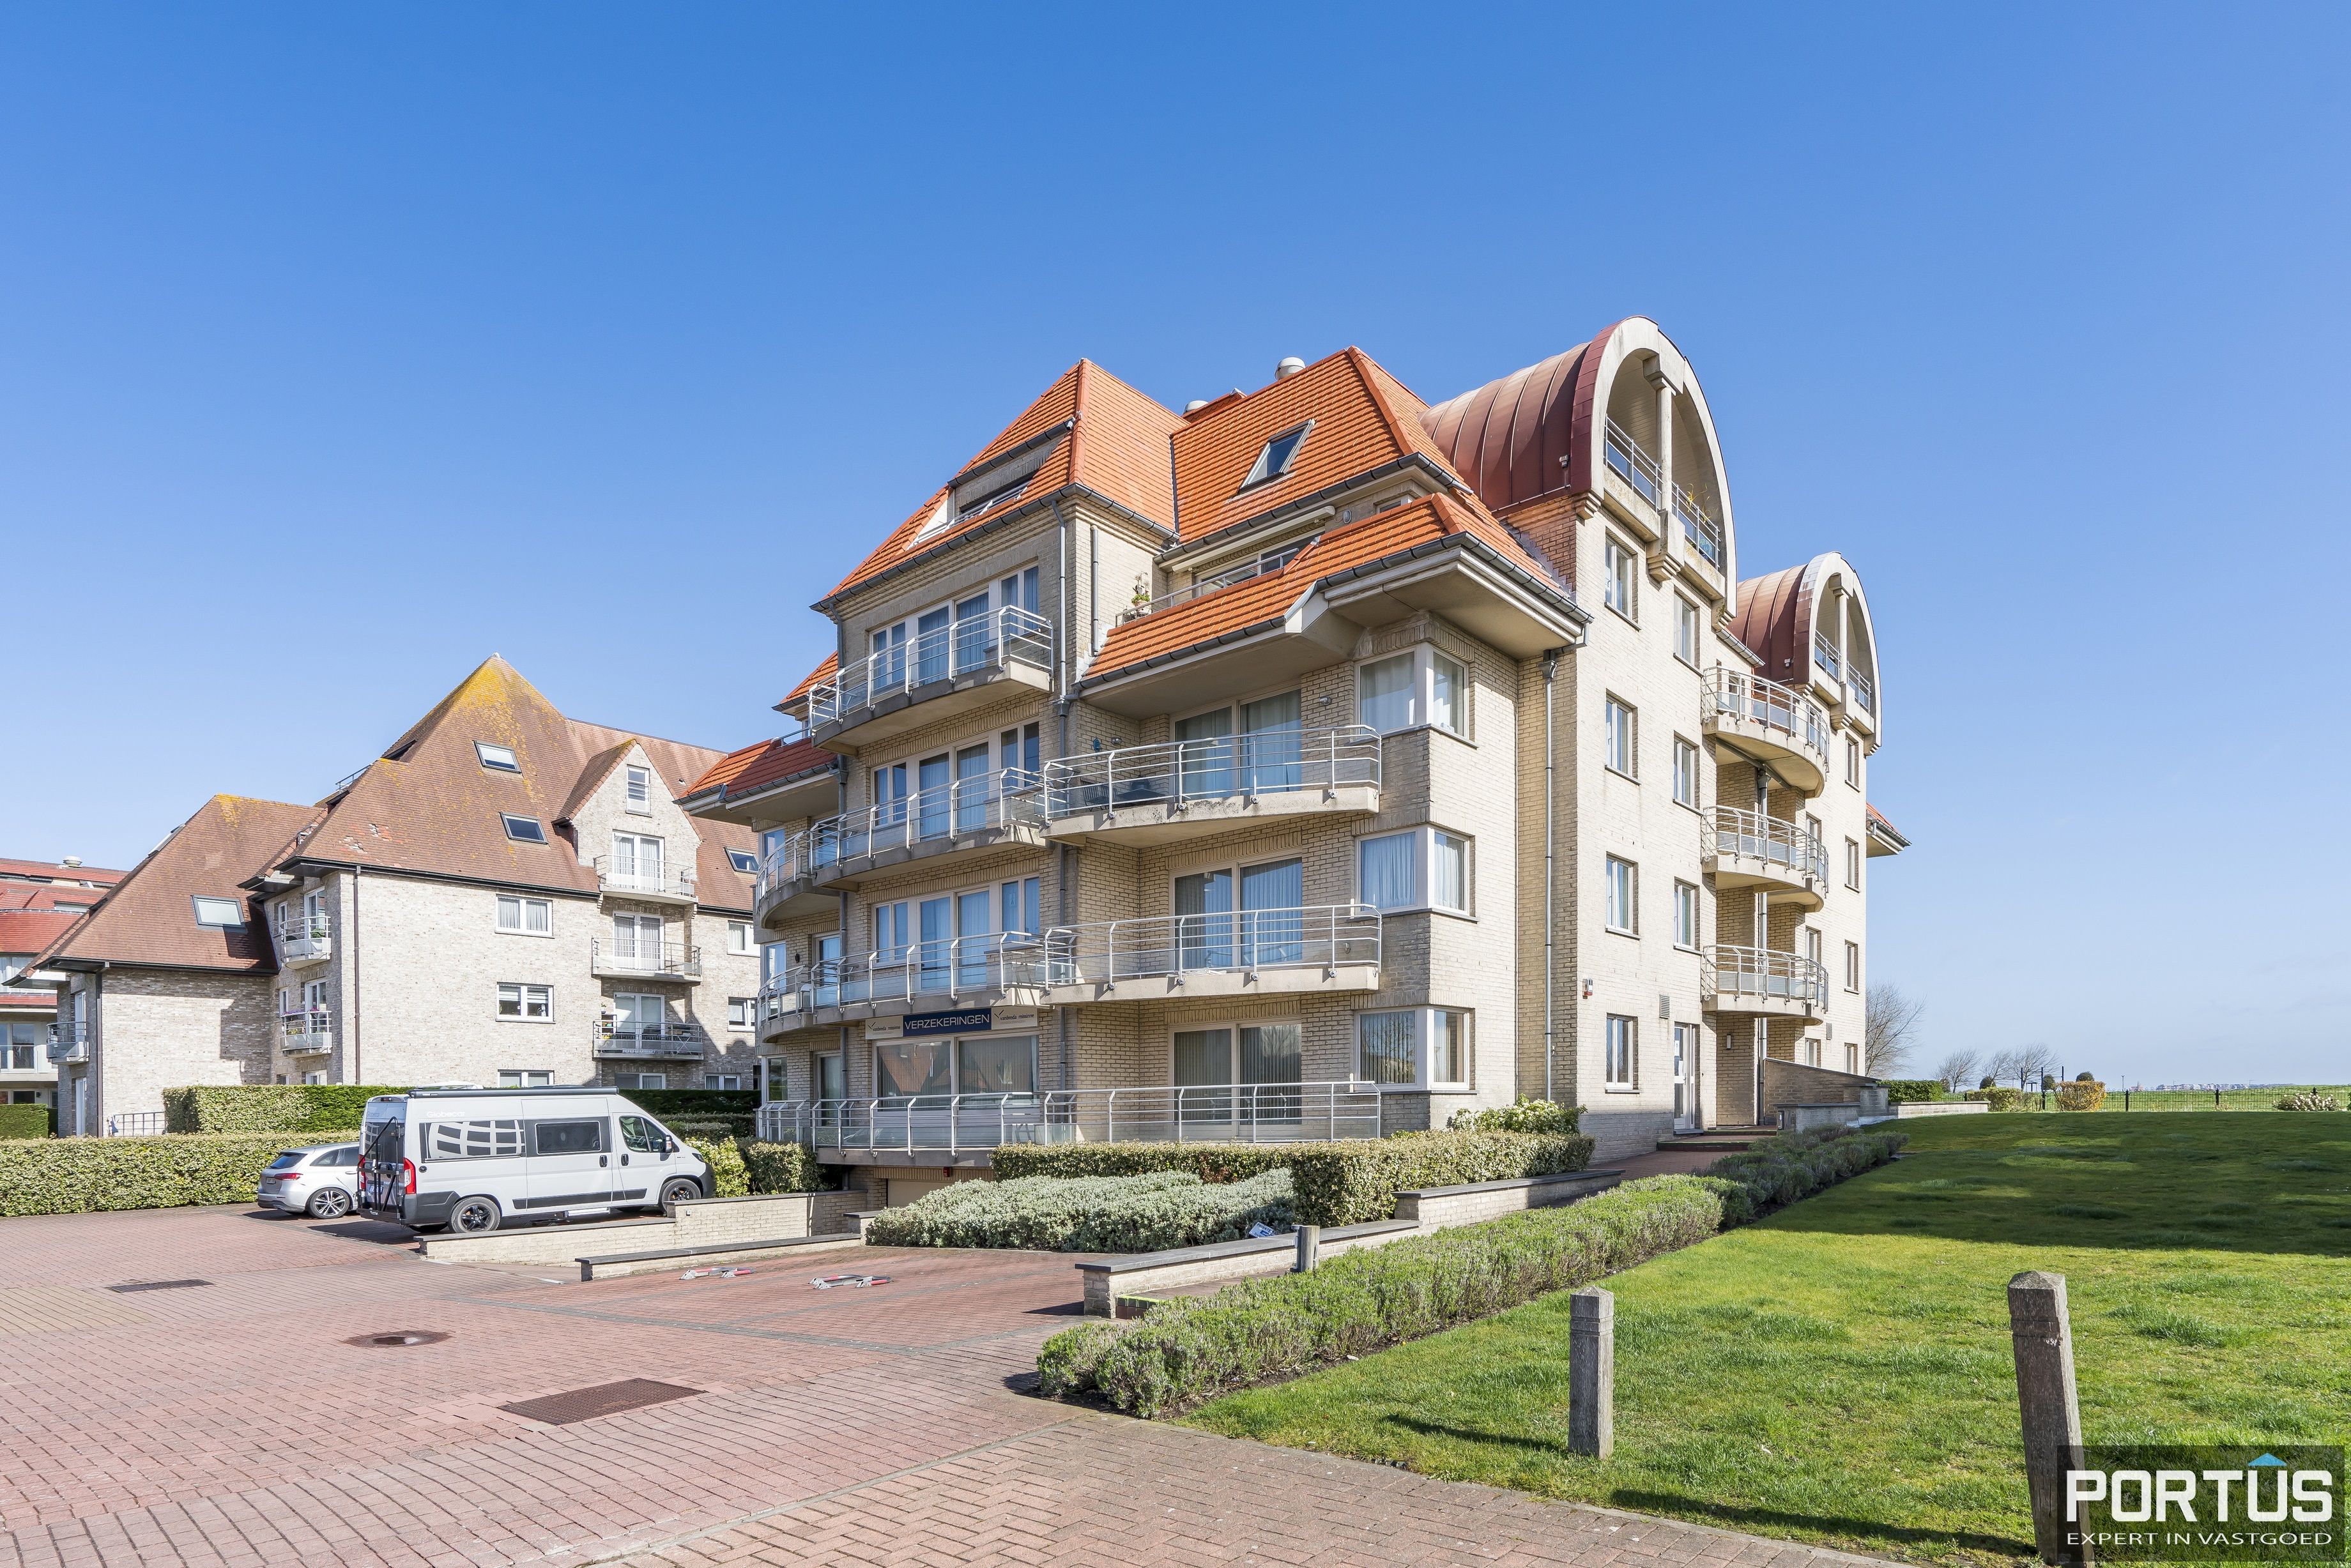 Appartement/Handelsgelijkvloers met terras te koop te Nieuwpoort - 15493